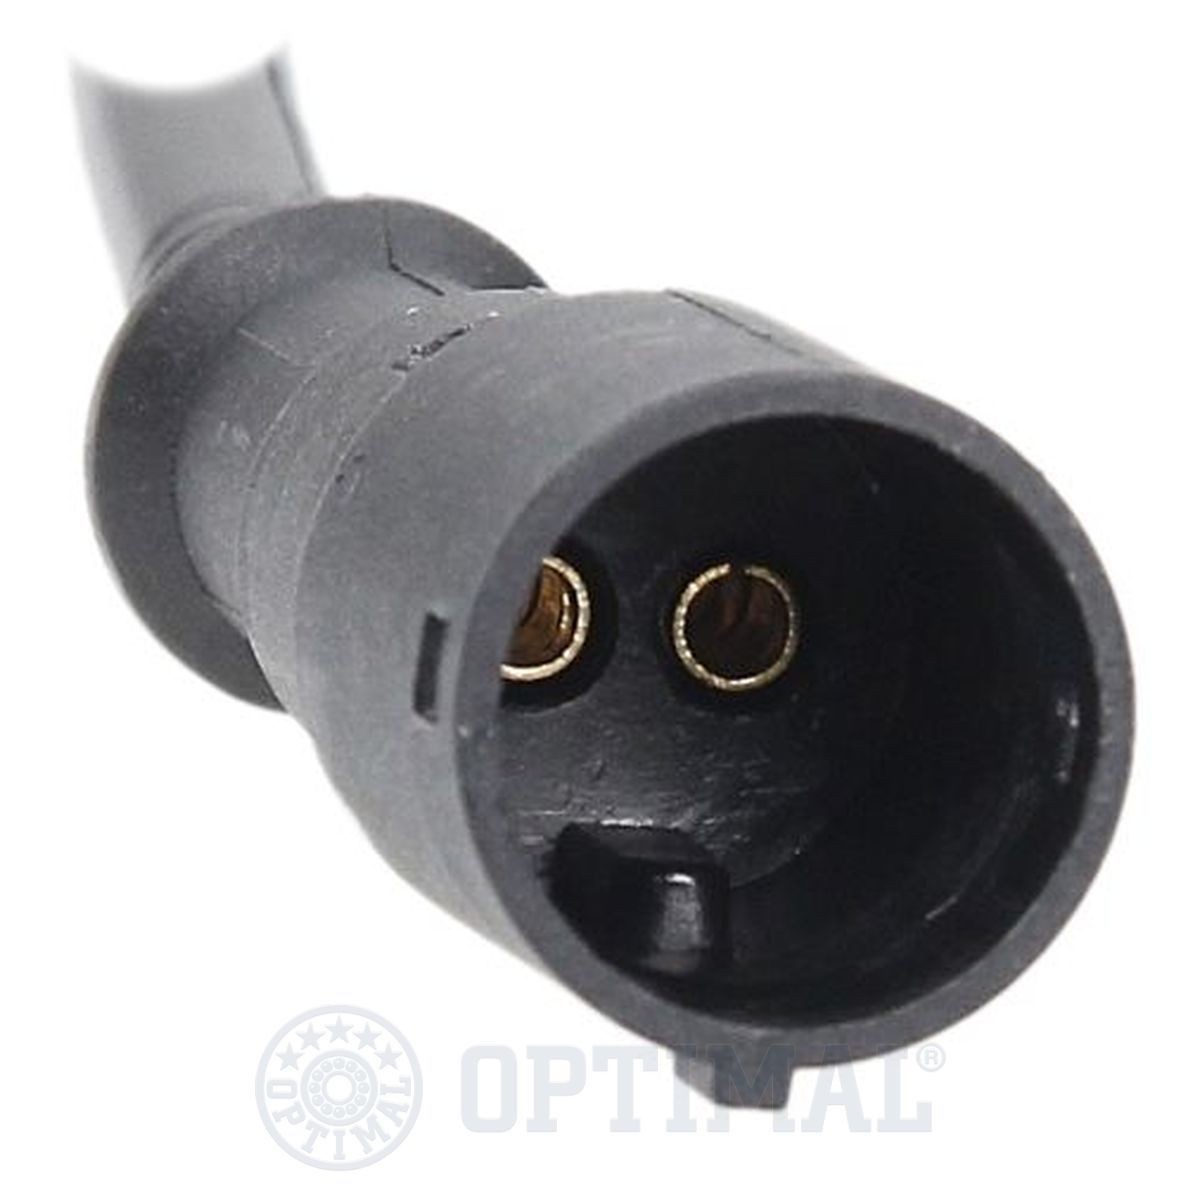 06S514 Anti lock brake sensor OPTIMAL 06-S514 review and test